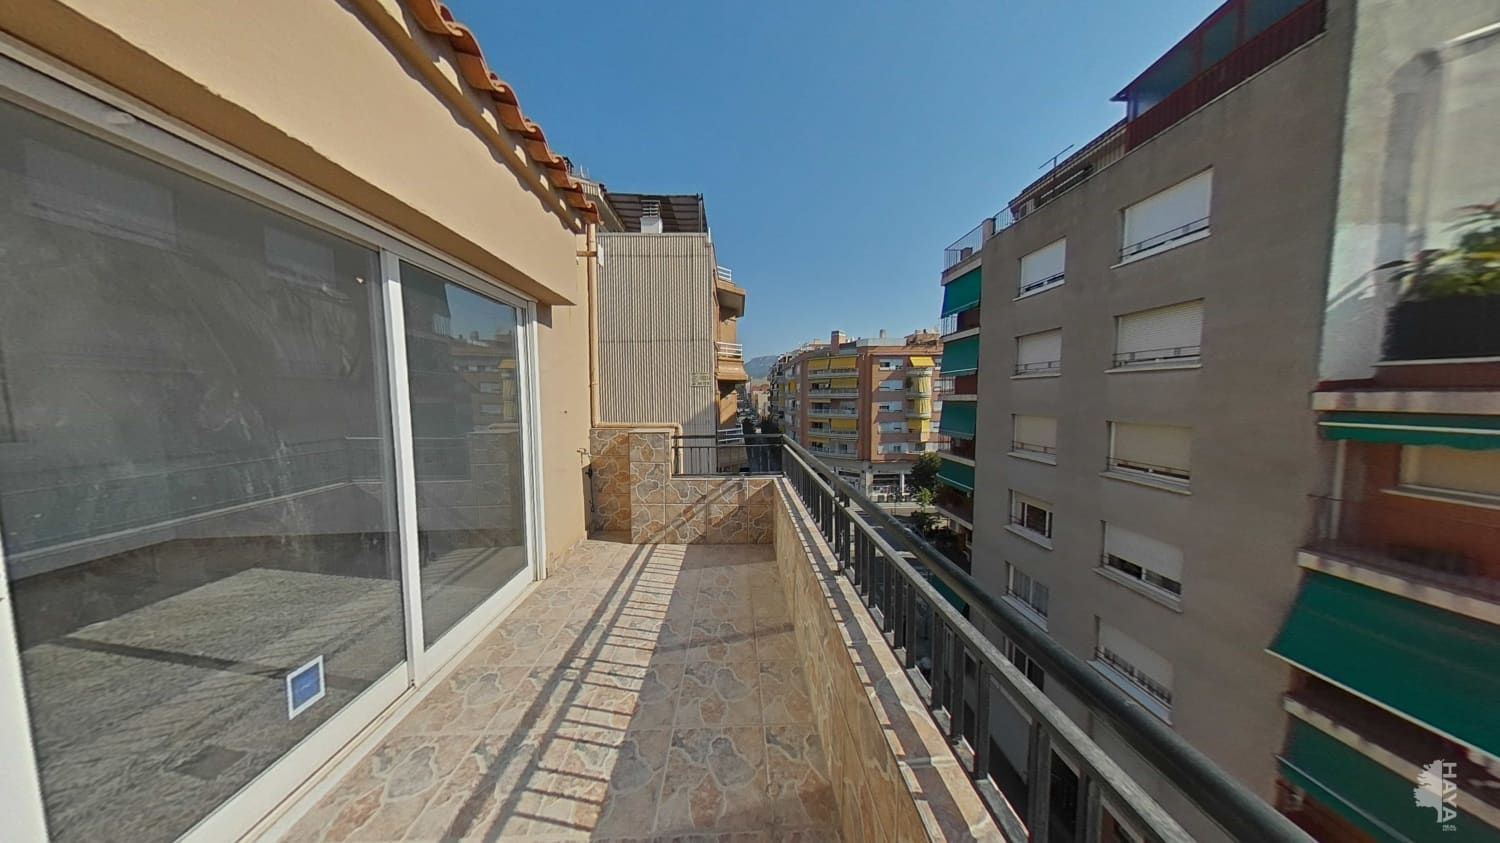 Alquiler Piso  Calle girona. Ático en alquiler en calle girona, terrassa, barcelona